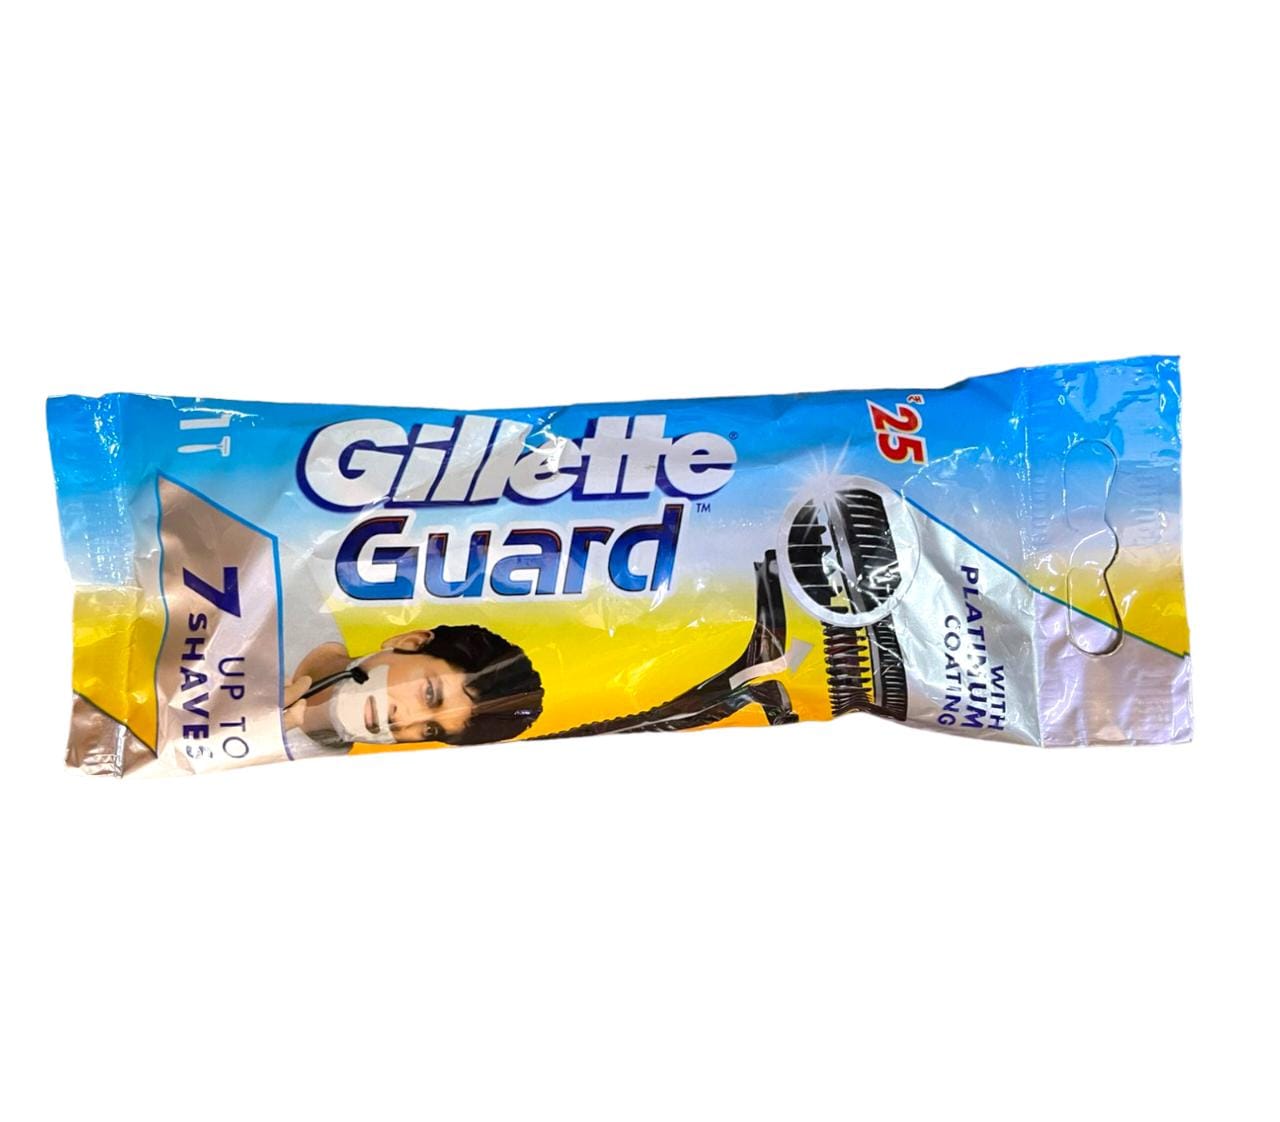 Gillette guard